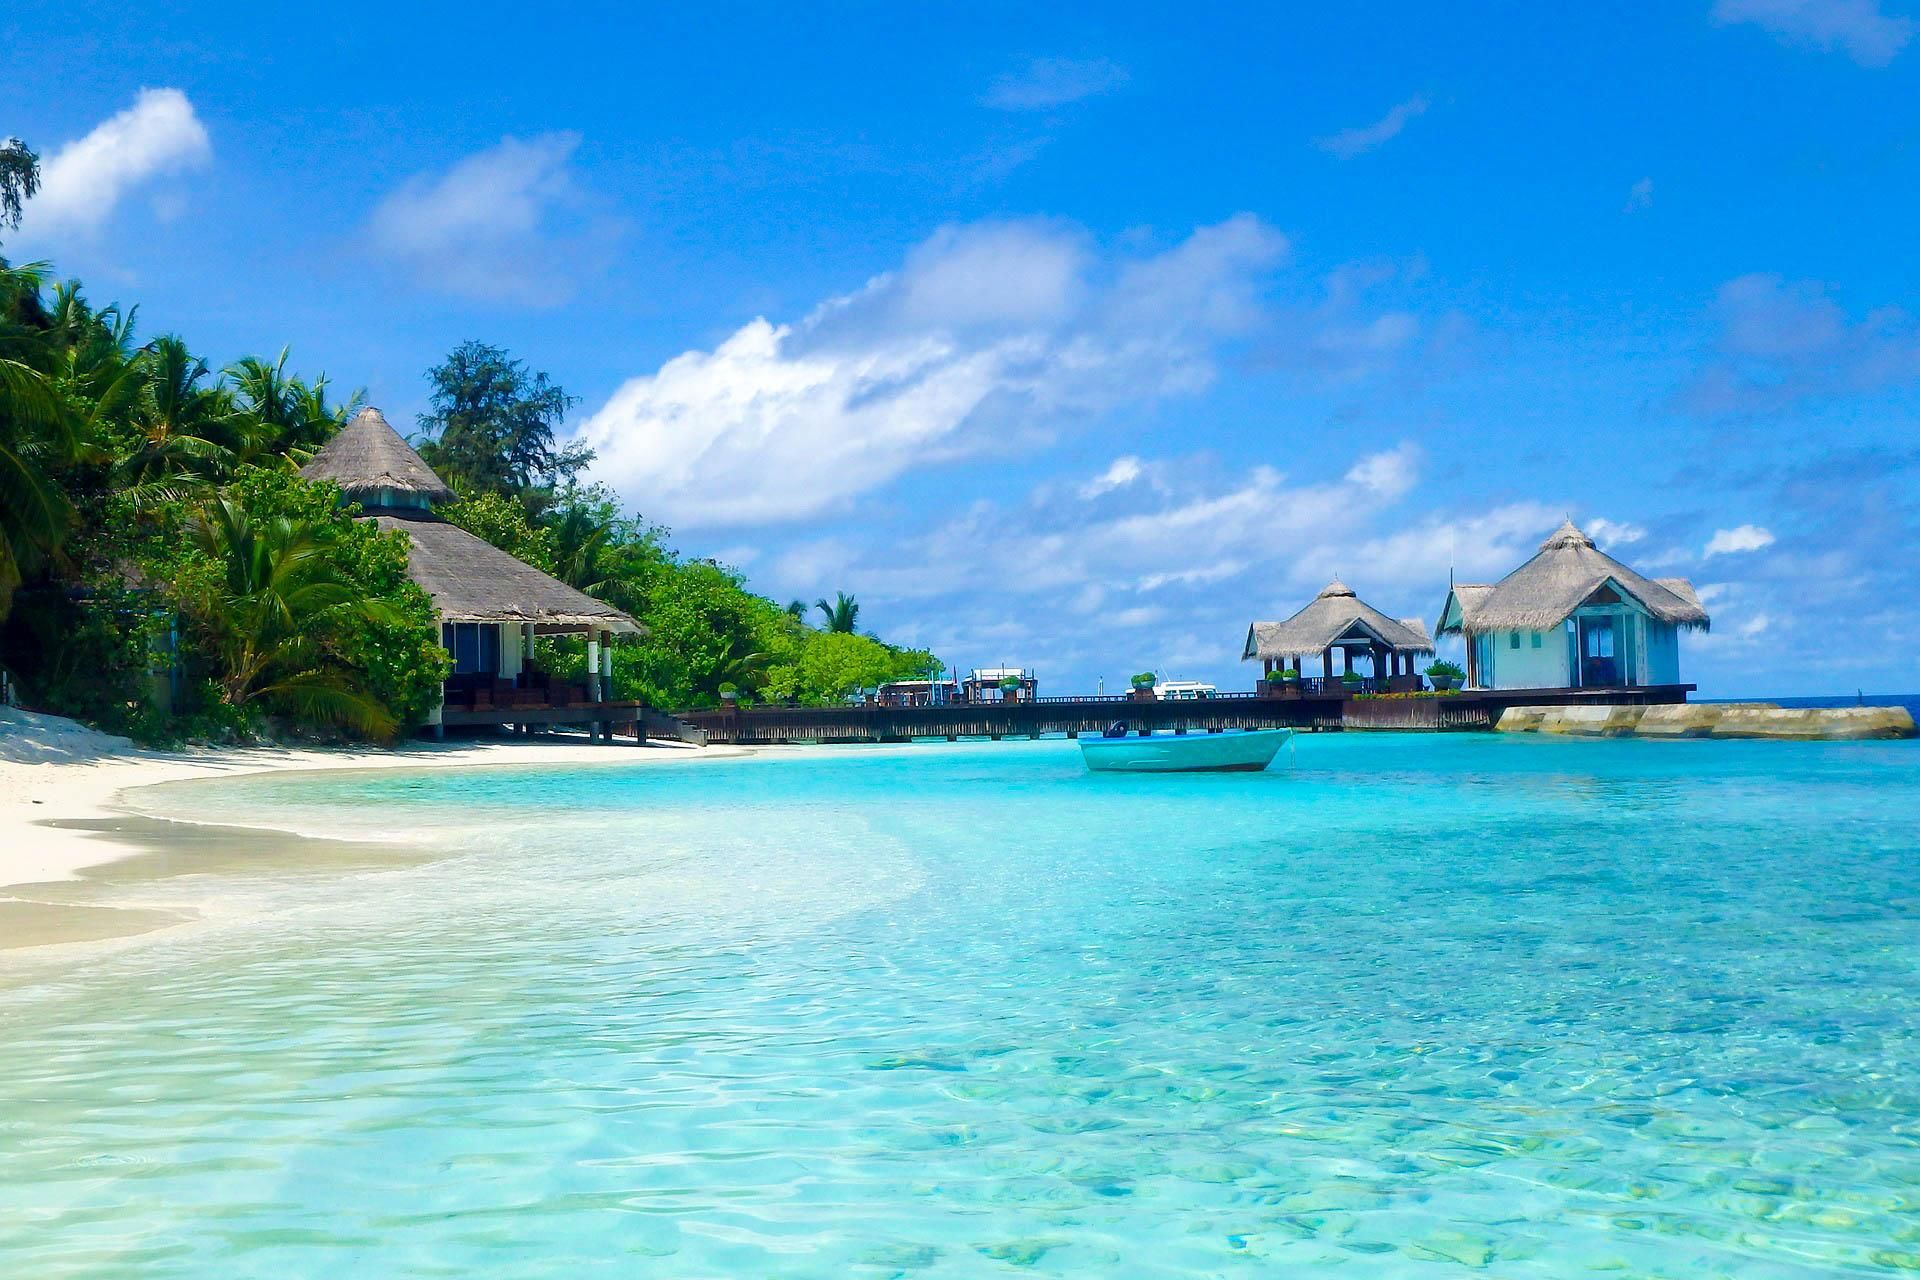  14 полезных советов тем, кто летит на Мальдивы